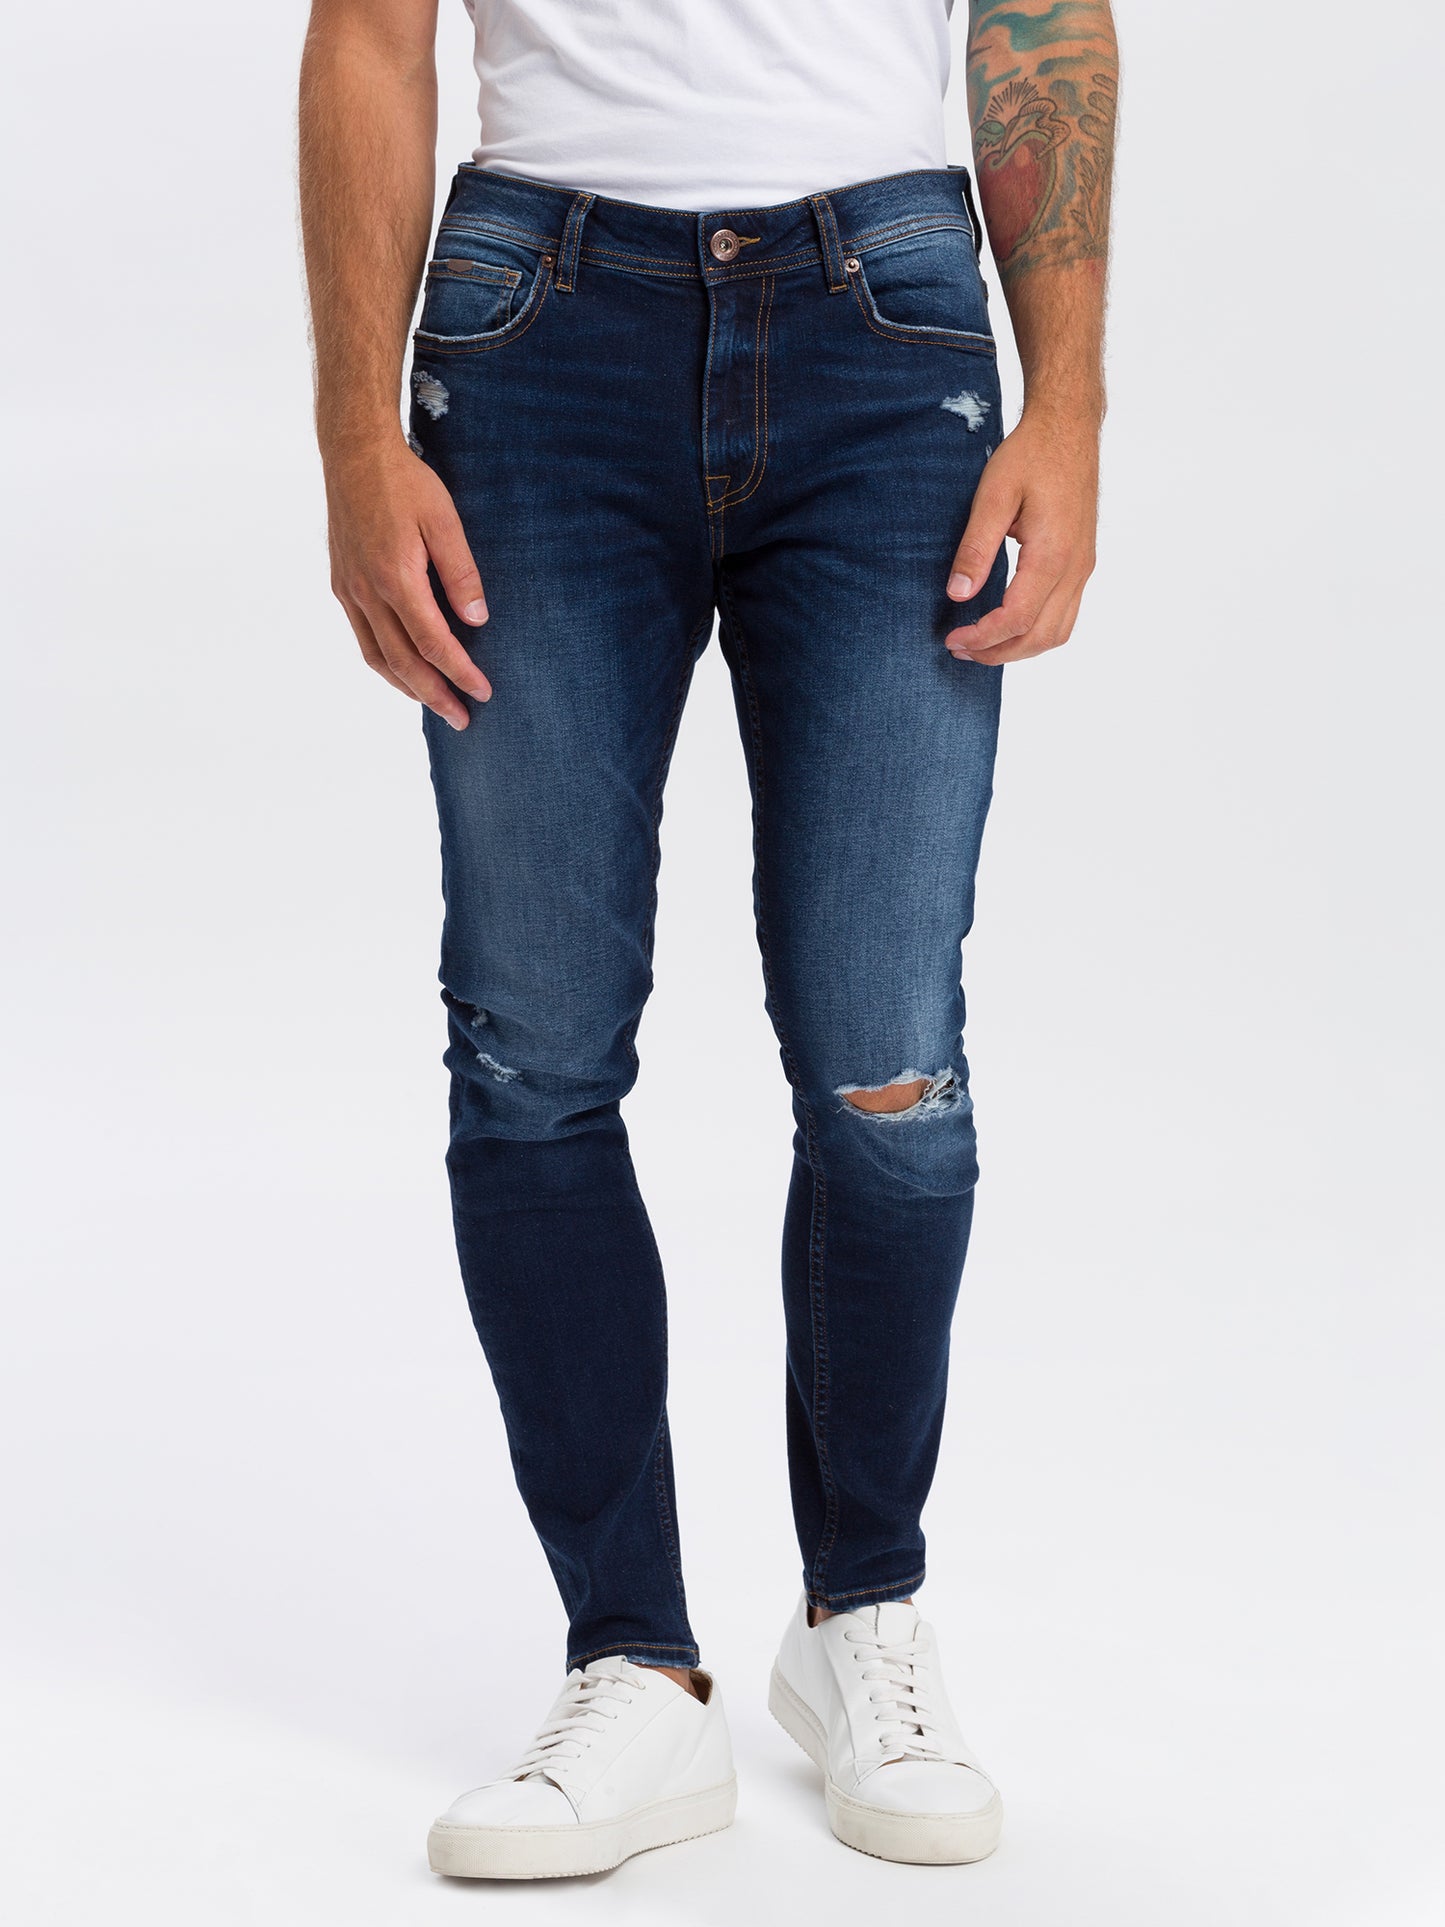 Scott Herren Jeans Skinny Fit Regular Waist dunkelblau